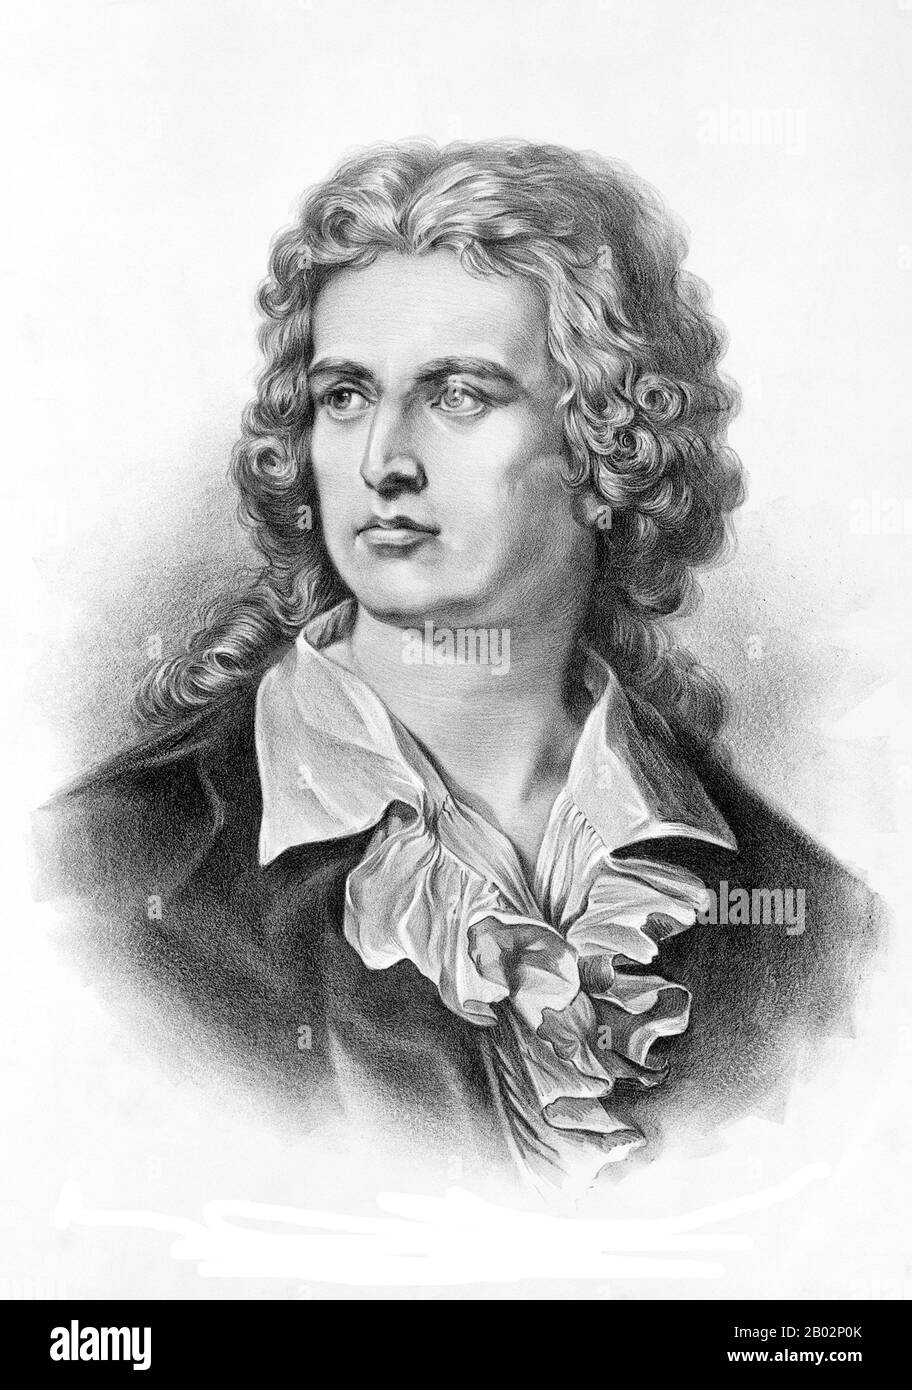 Johann Christoph Friedrich von Schillers (* 10. November 1759; † 9. Mai 1805) war ein deutscher Dichter, Philosoph, Historiker und Dramatiker. Während der letzten siebzehn Jahre seines Lebens (1785-1805) verband sich mit Johann Wolfgang von Goethe-Institut eine produktive Freundschaft. Sie diskutierten häufig Fragen zur Ästhetik, und Schillers ermutigte Goethe-Werke, die er als Skizzen hinterlassen hatte, zu beenden. Diese Beziehung und diese Diskussionen führten zu einer Zeit, die nun als "Weimar-Klassizismus" bezeichnet wurde. Von den meisten Deutschen gilt Schillers als Deutschlands wichtigster klassischer Dramatiker. Stockfoto